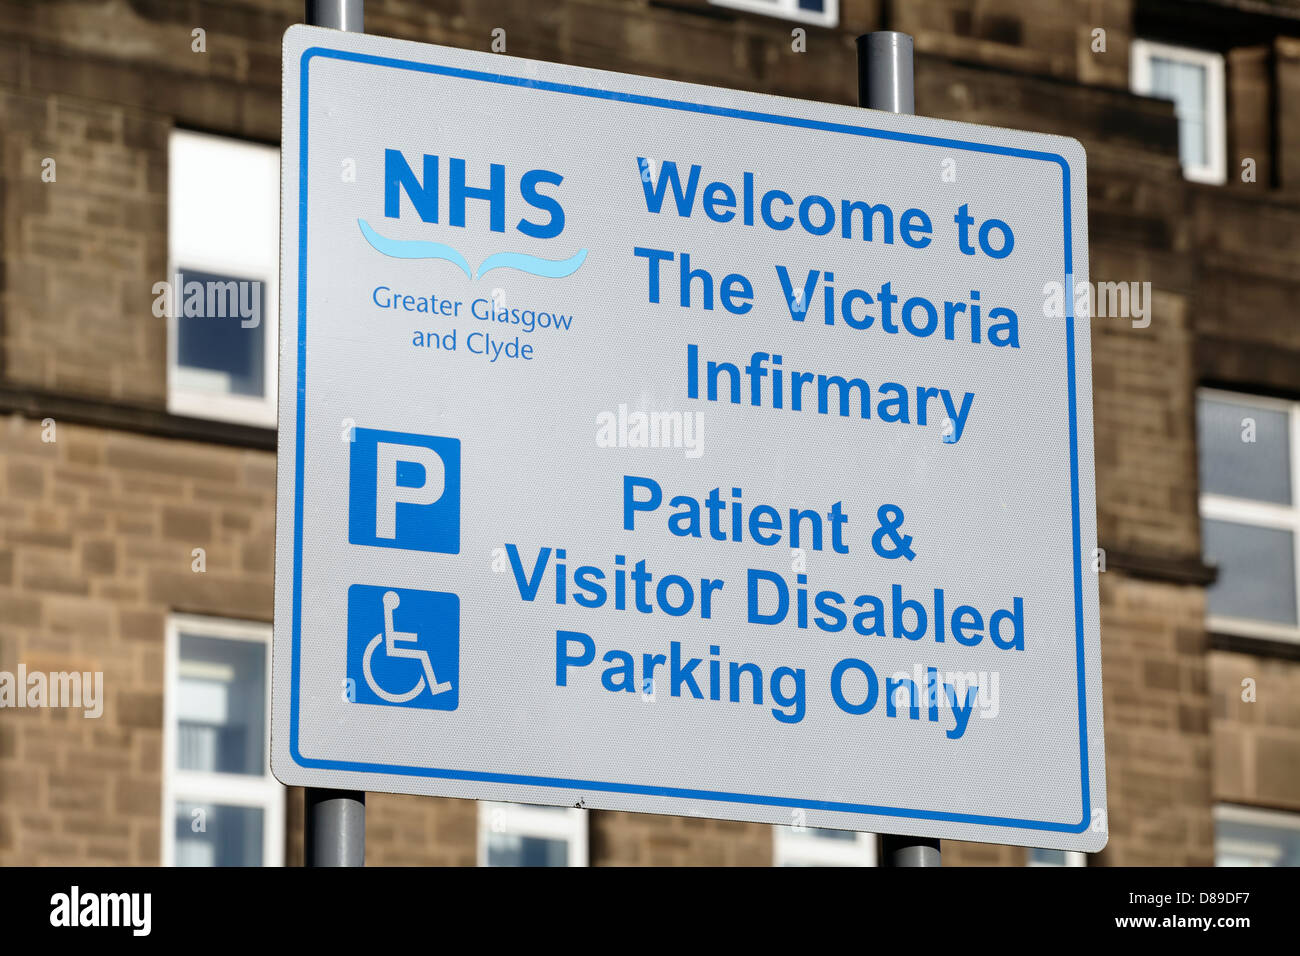 L'ancienne infirmerie Victoria est fermée en permanence. Panneau de stationnement pour les patients et les visiteurs handicapés à l'ancienne infirmerie Victoria à Glasgow, en Écosse, au Royaume-Uni Banque D'Images